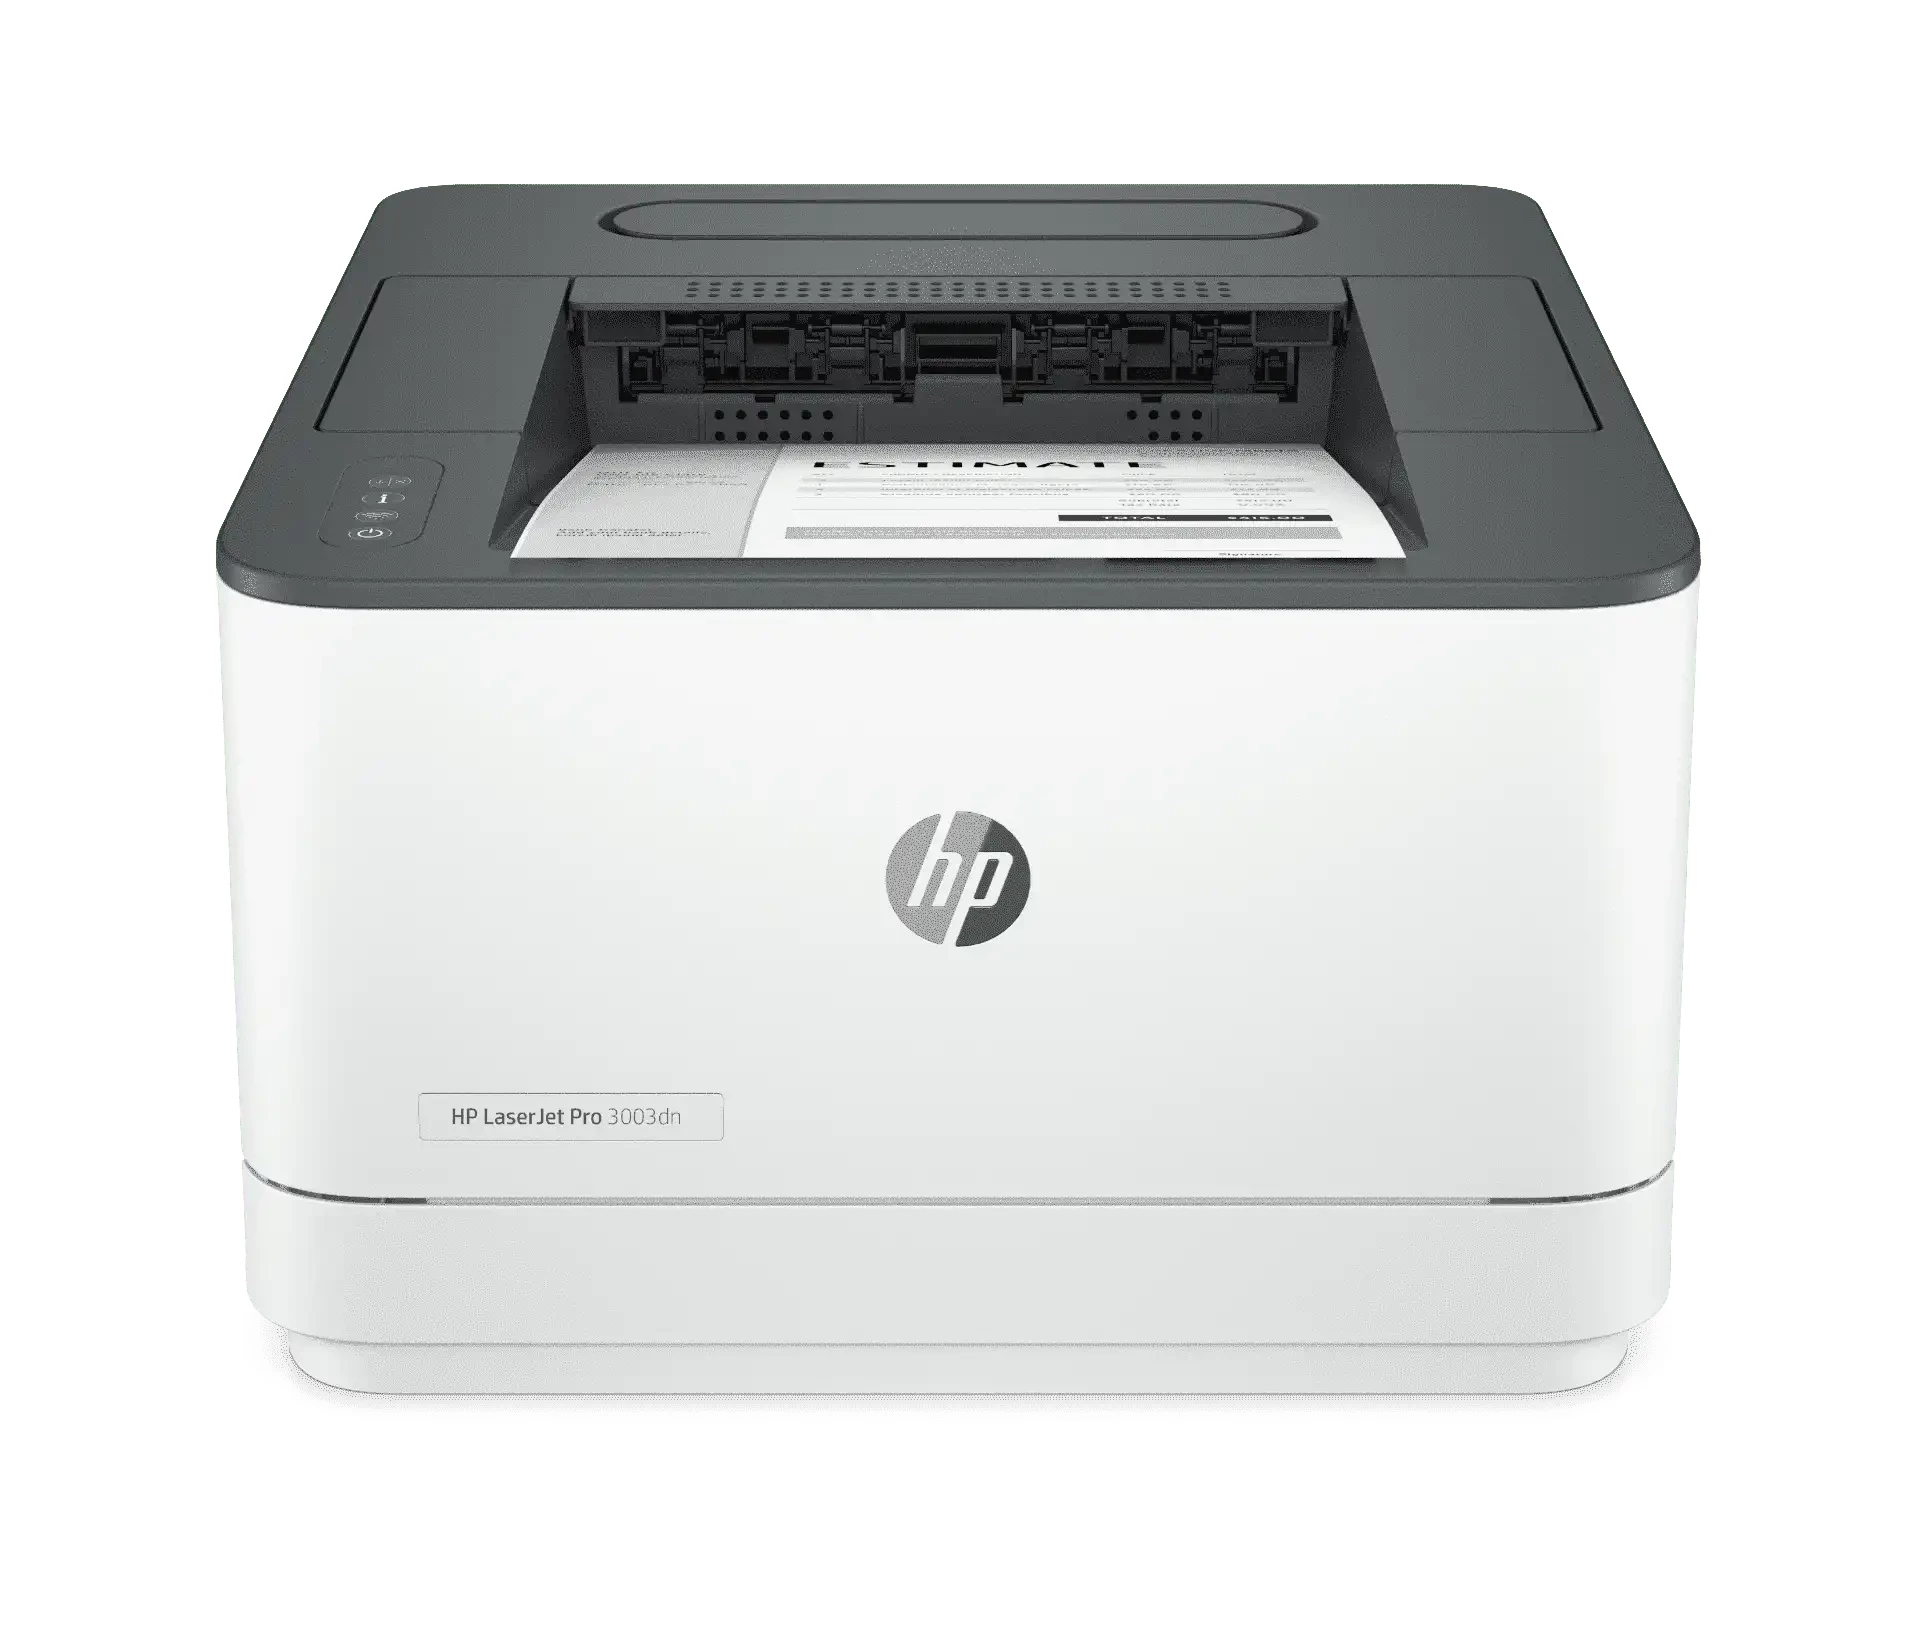 HP LaserJet Pro 3003dn 鐳射打印機 #3G653A